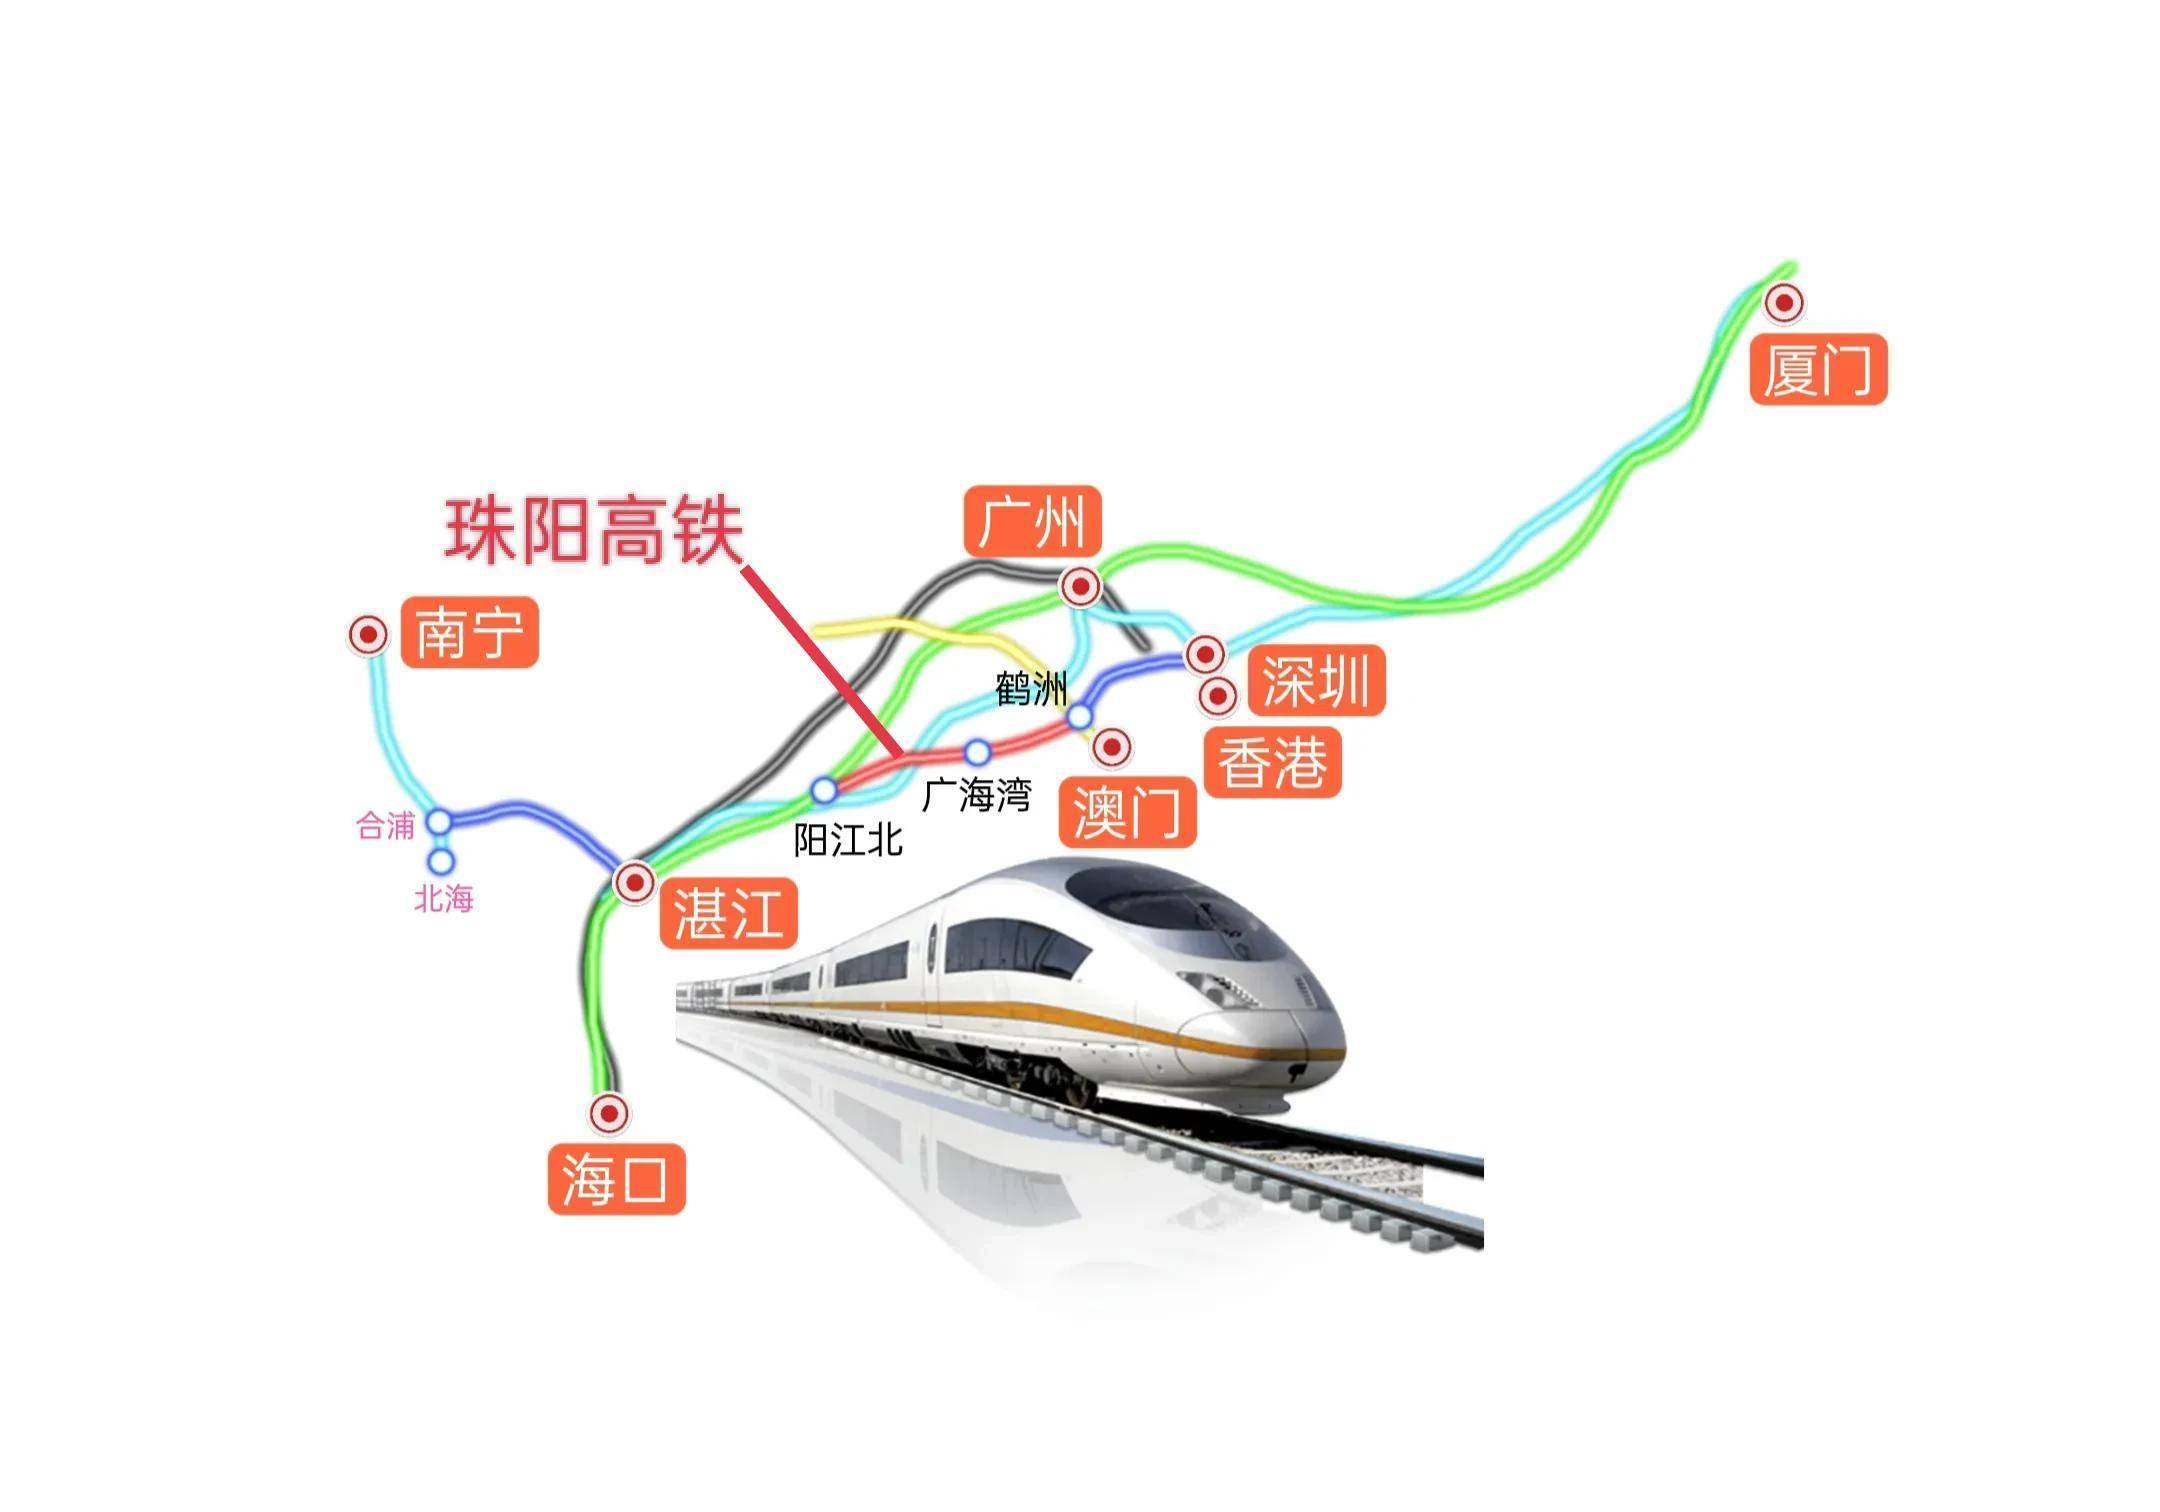 珠阳高铁:全线位于广东省内,起于珠海市,途经江门市,连接至阳江市止